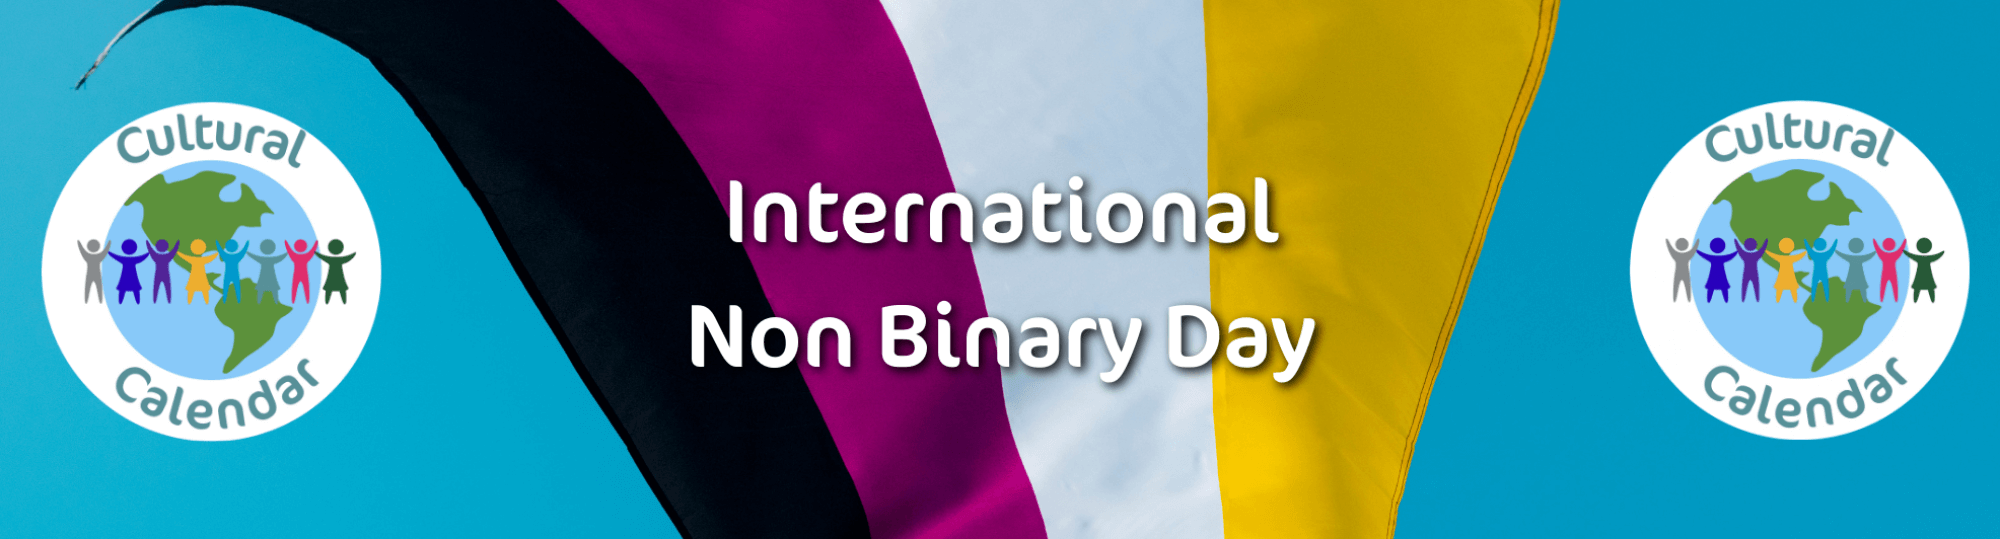 Cultural Calendar: Non Binary Day